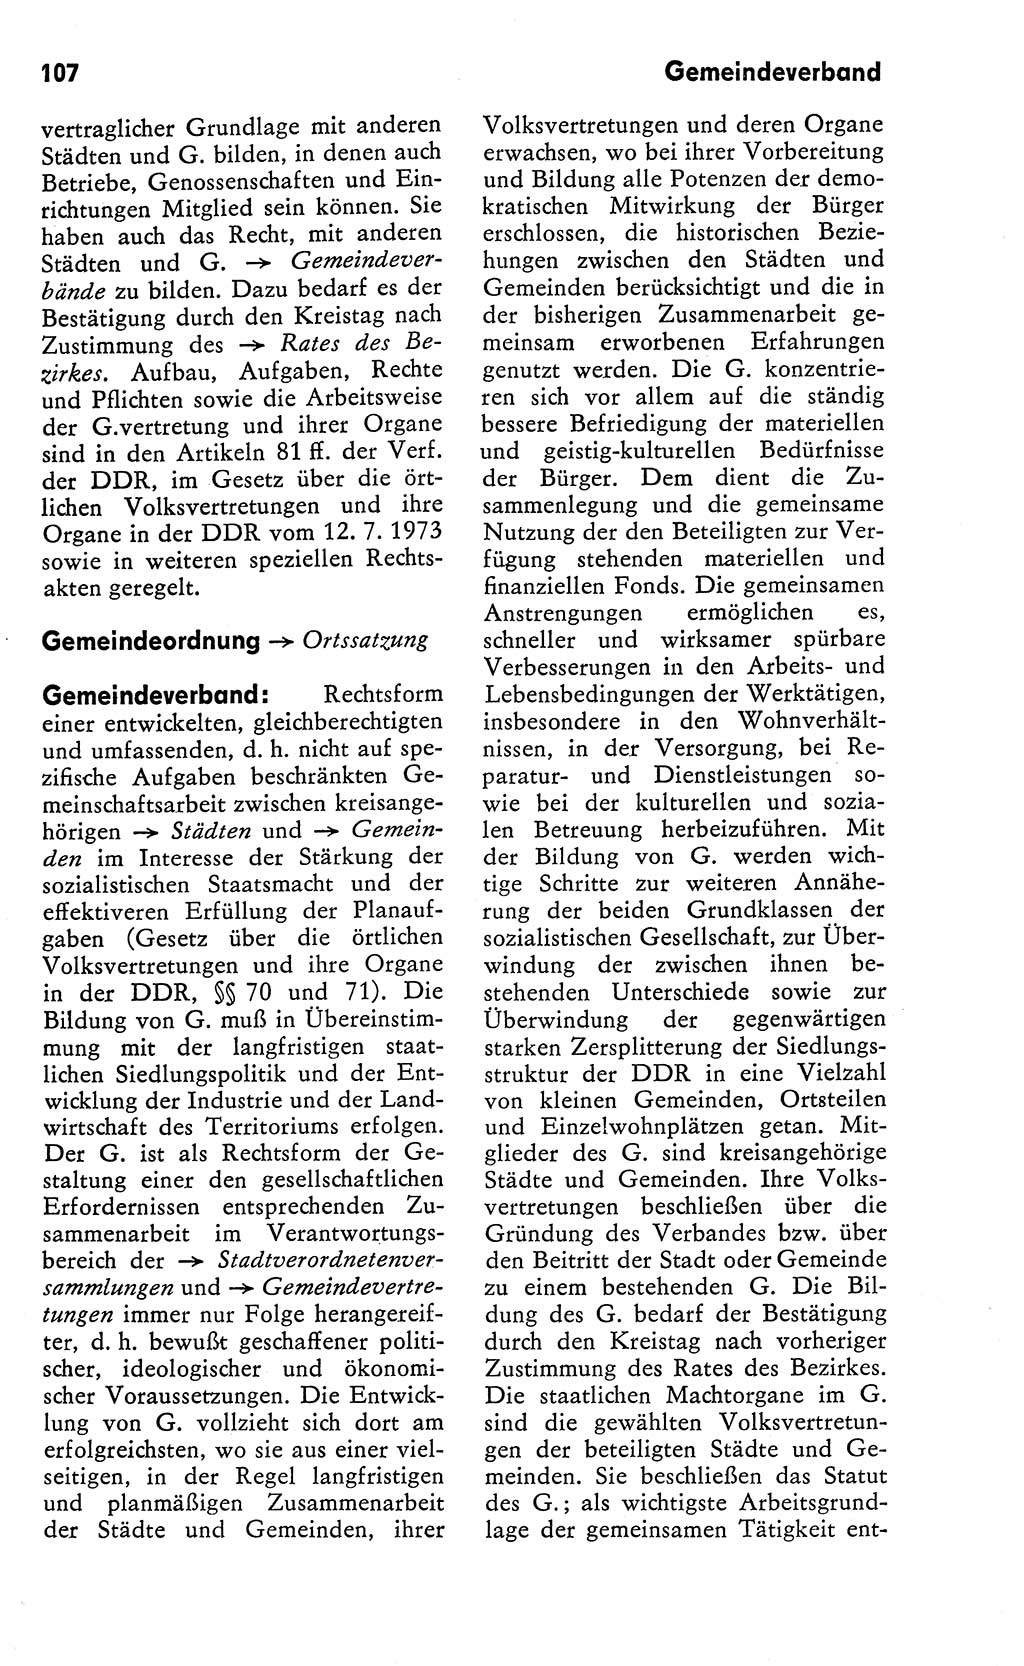 Wörterbuch zum sozialistischen Staat [Deutsche Demokratische Republik (DDR)] 1974, Seite 107 (Wb. soz. St. DDR 1974, S. 107)